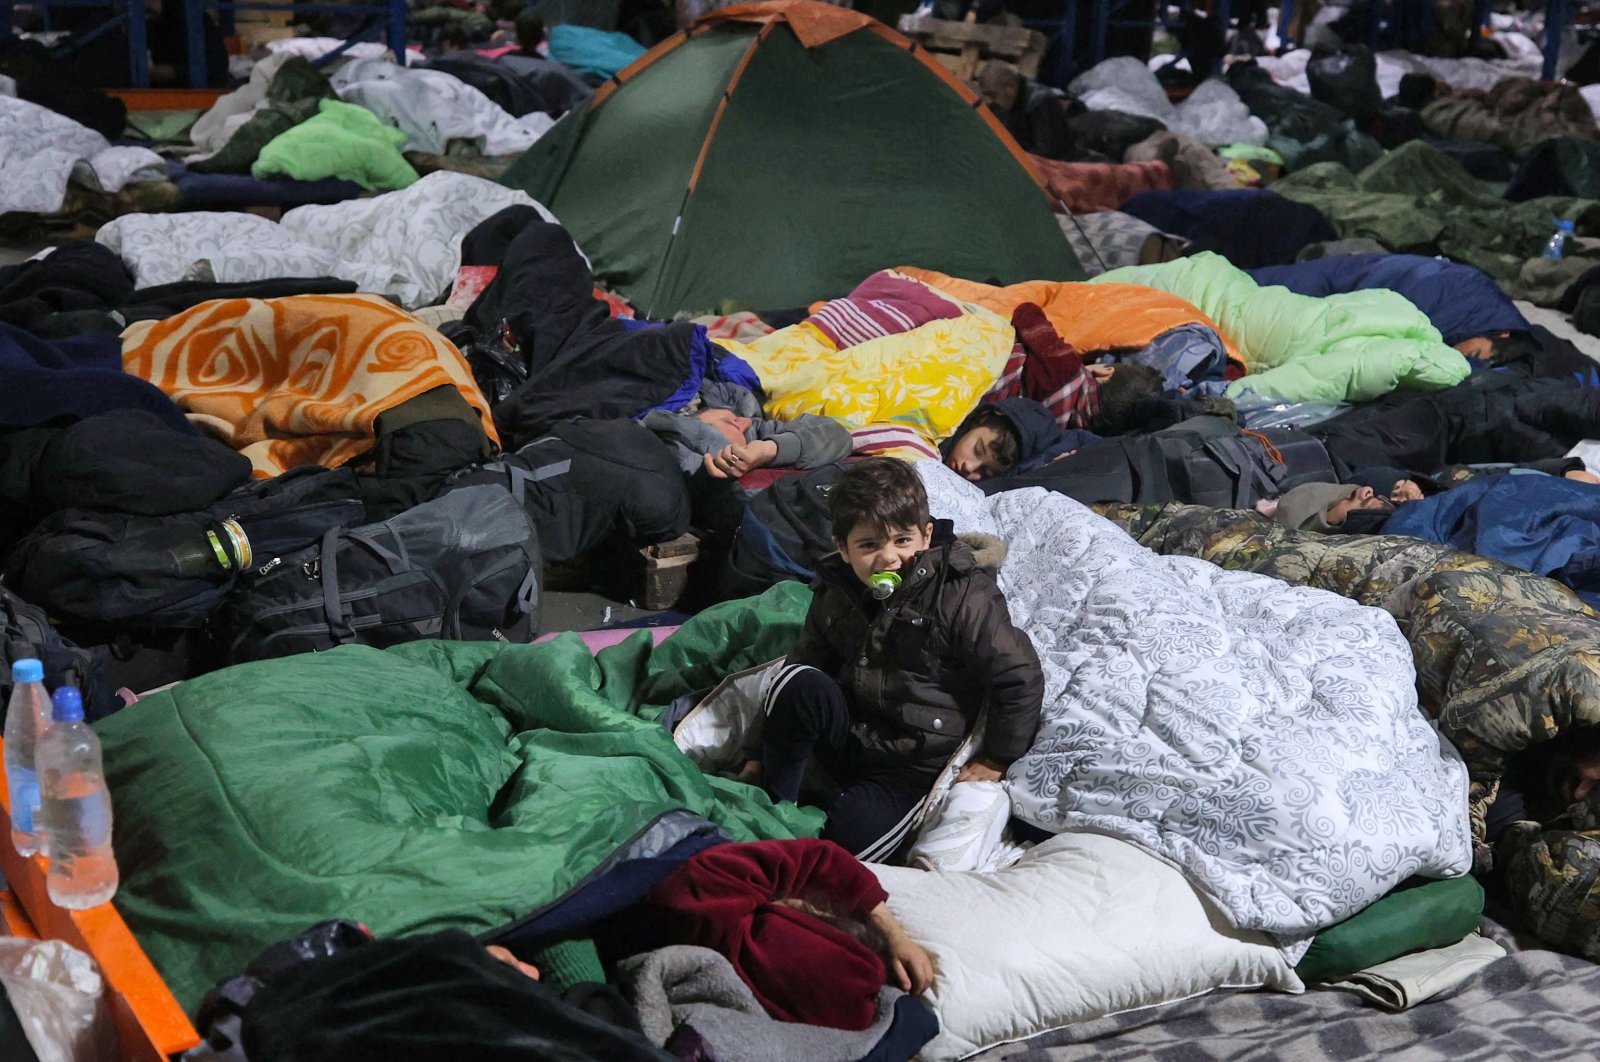 Jumlah migran gelap di atas tingkat pra-pandemi: Frontex